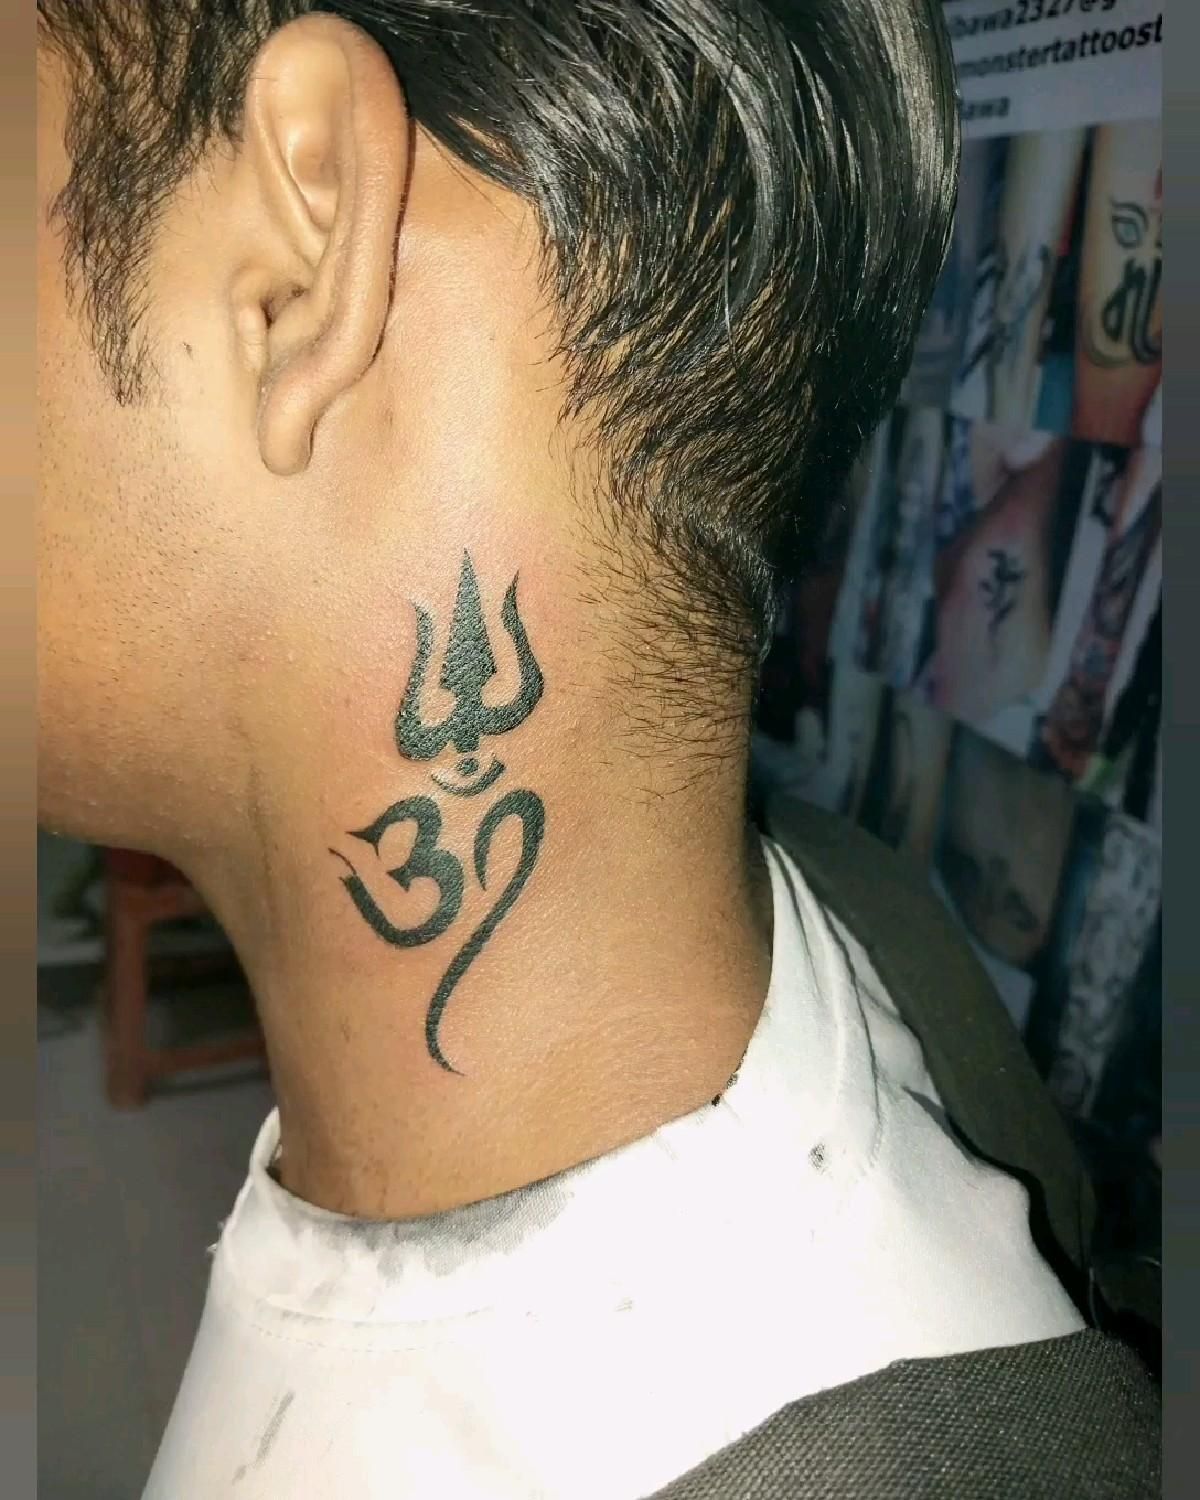 Riya Tattooz Ramnagar Uttarakhand | Riya Tattoo | Riya Tattoos